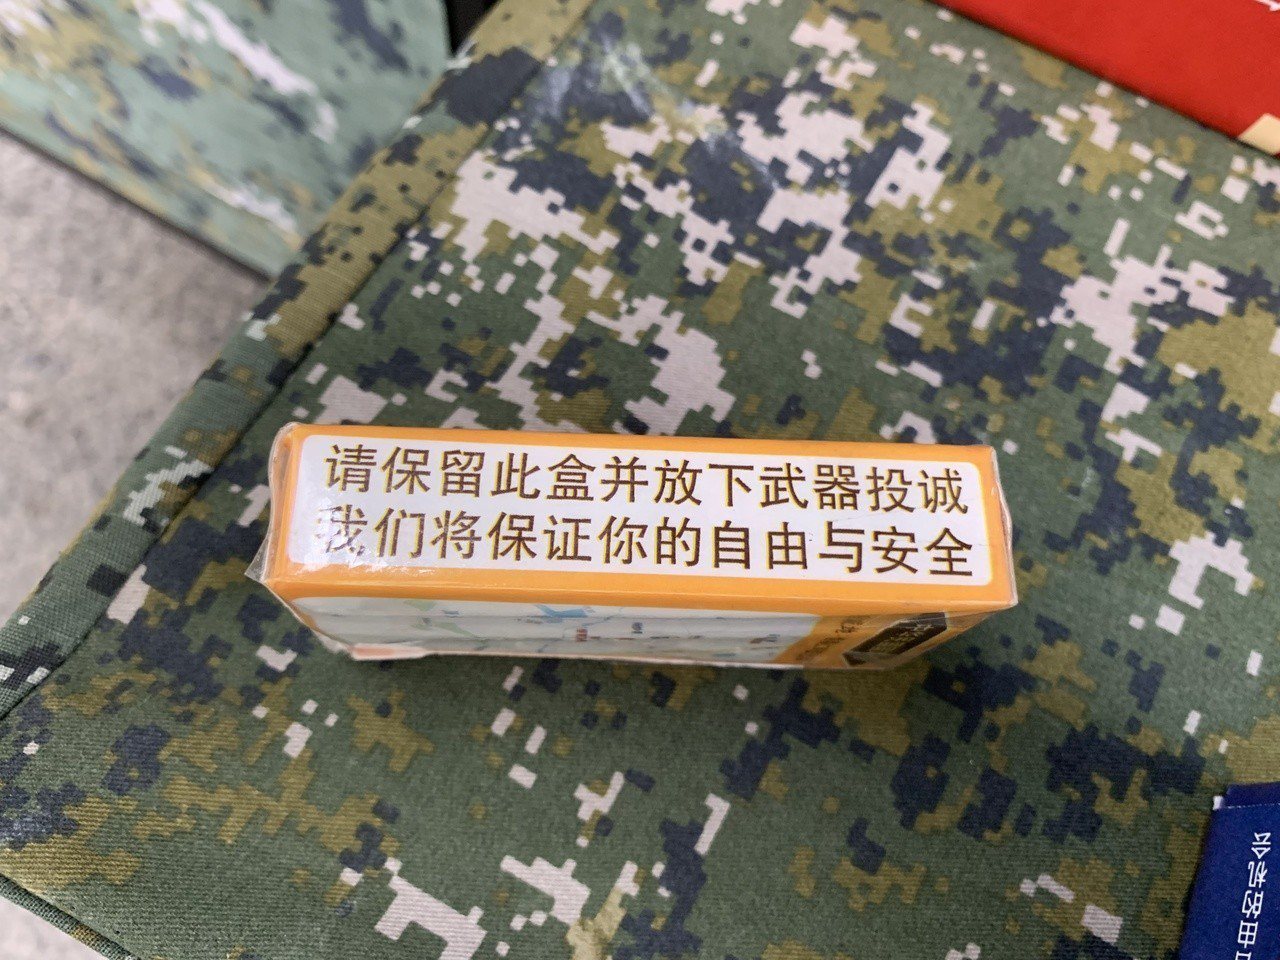 На Тайване продемонстрировали продуктовый набор для пленного военнослужащего 